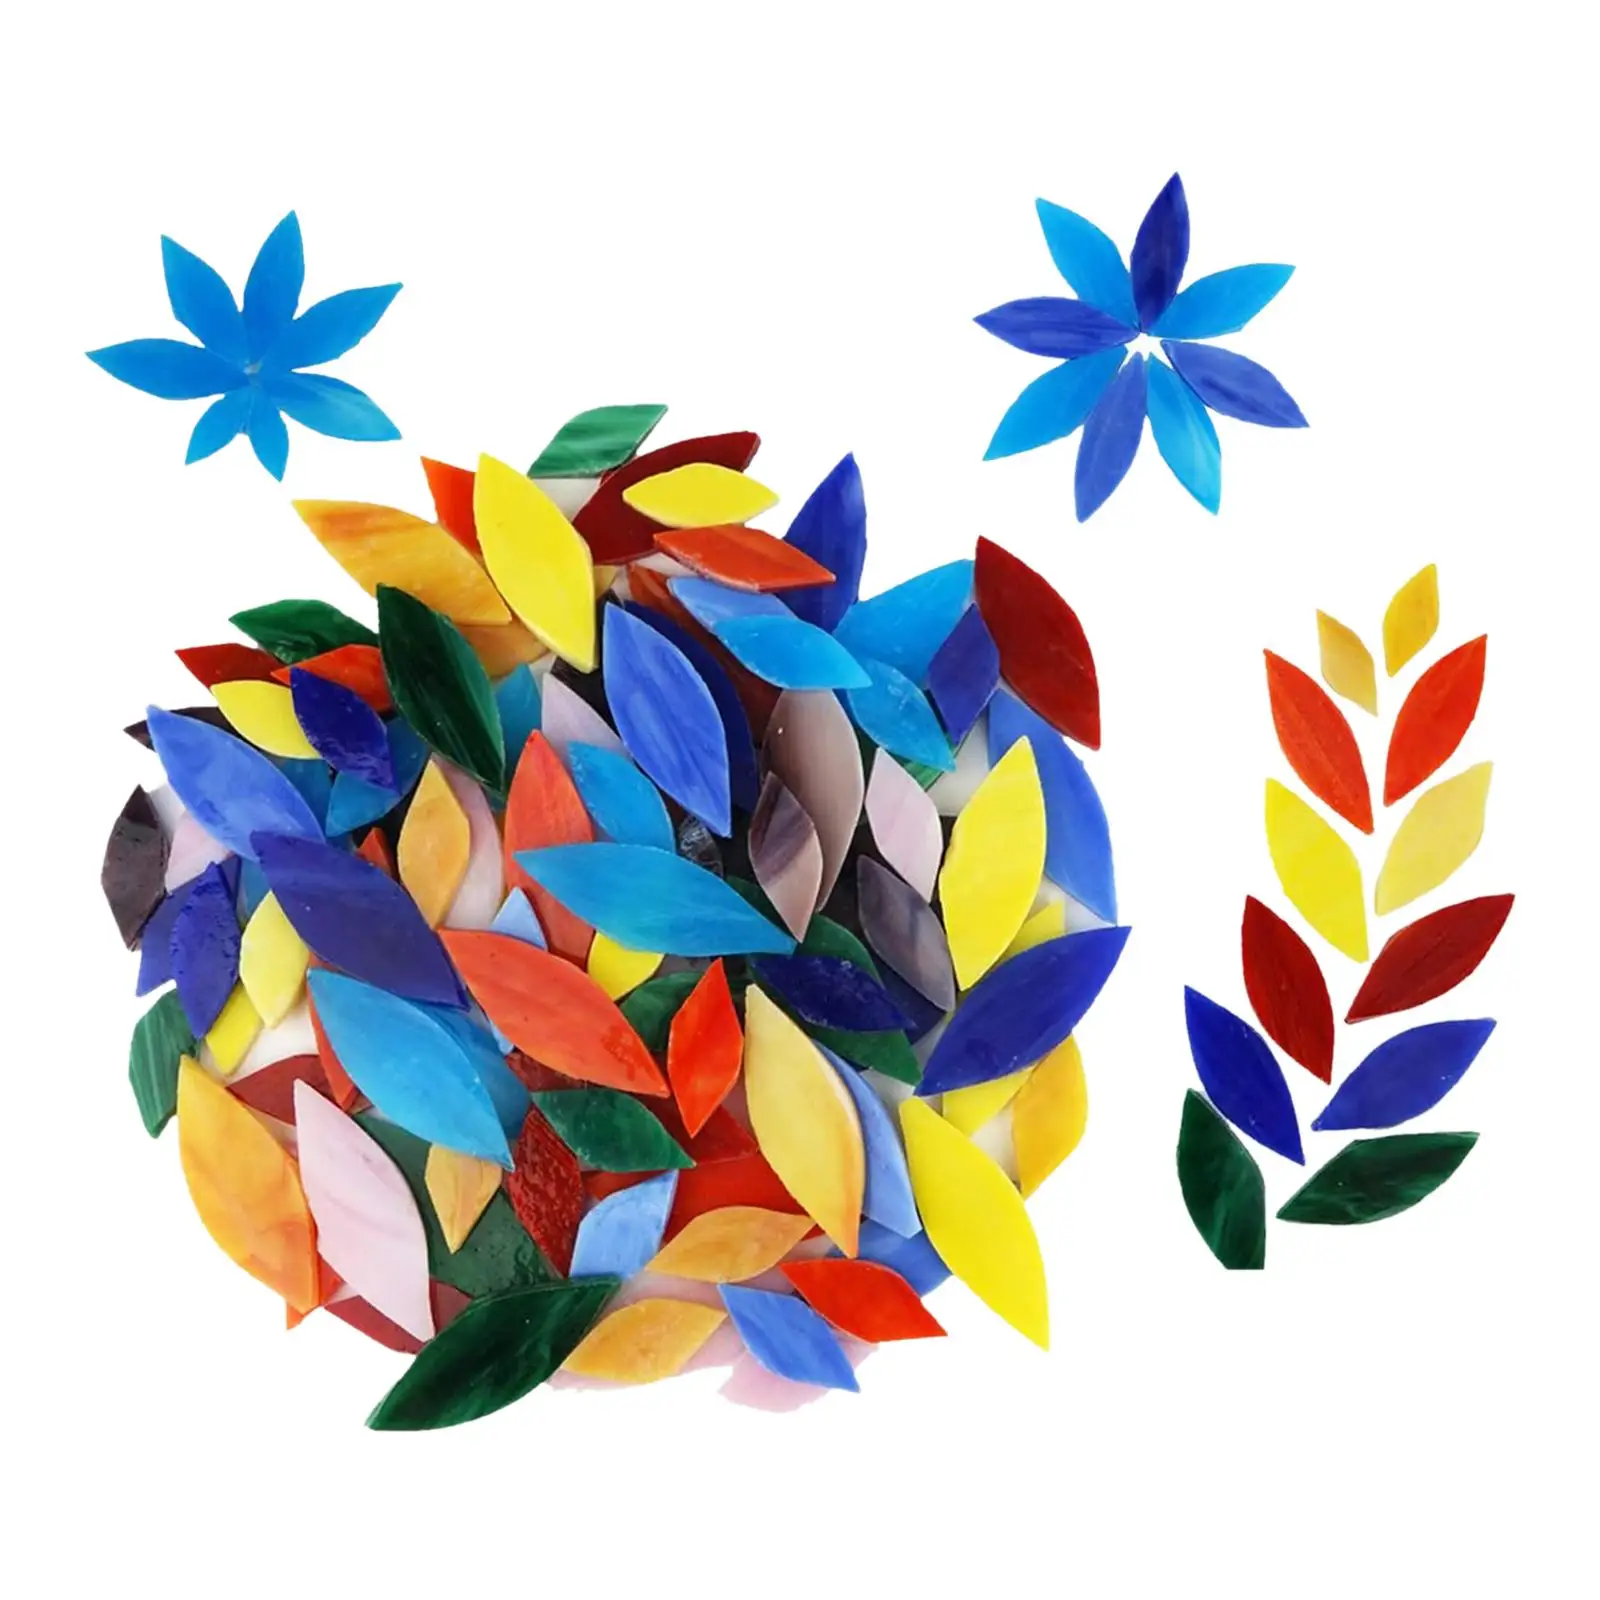 100 Pieces Mixed Colors Petal Mosaic Tiles Art Crafts Garden